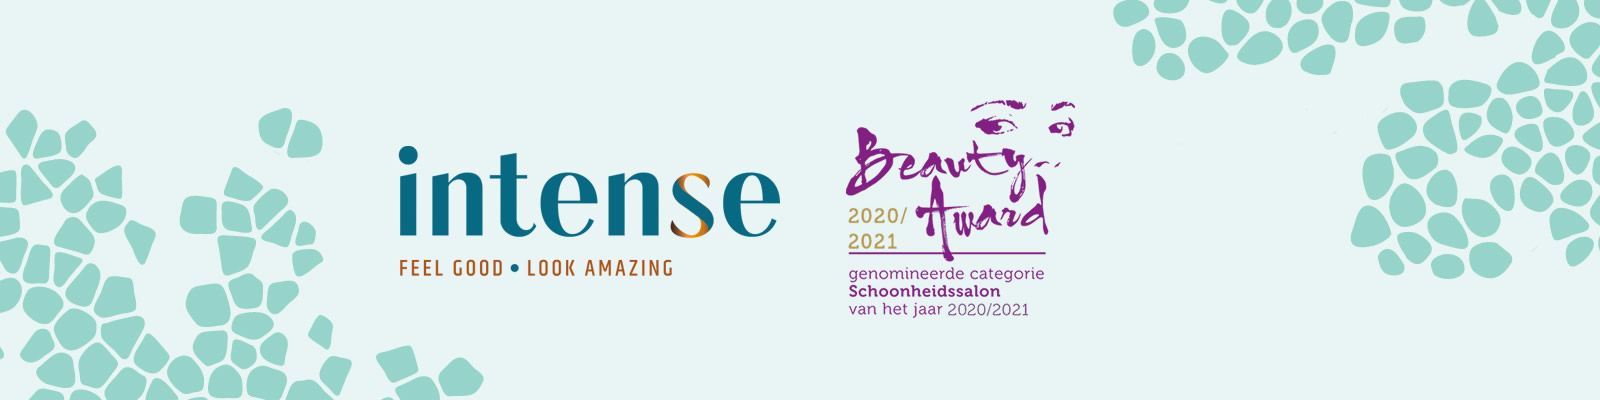 Beauty Award 2020/2021 genomineed schoonheidssalon van het jaar